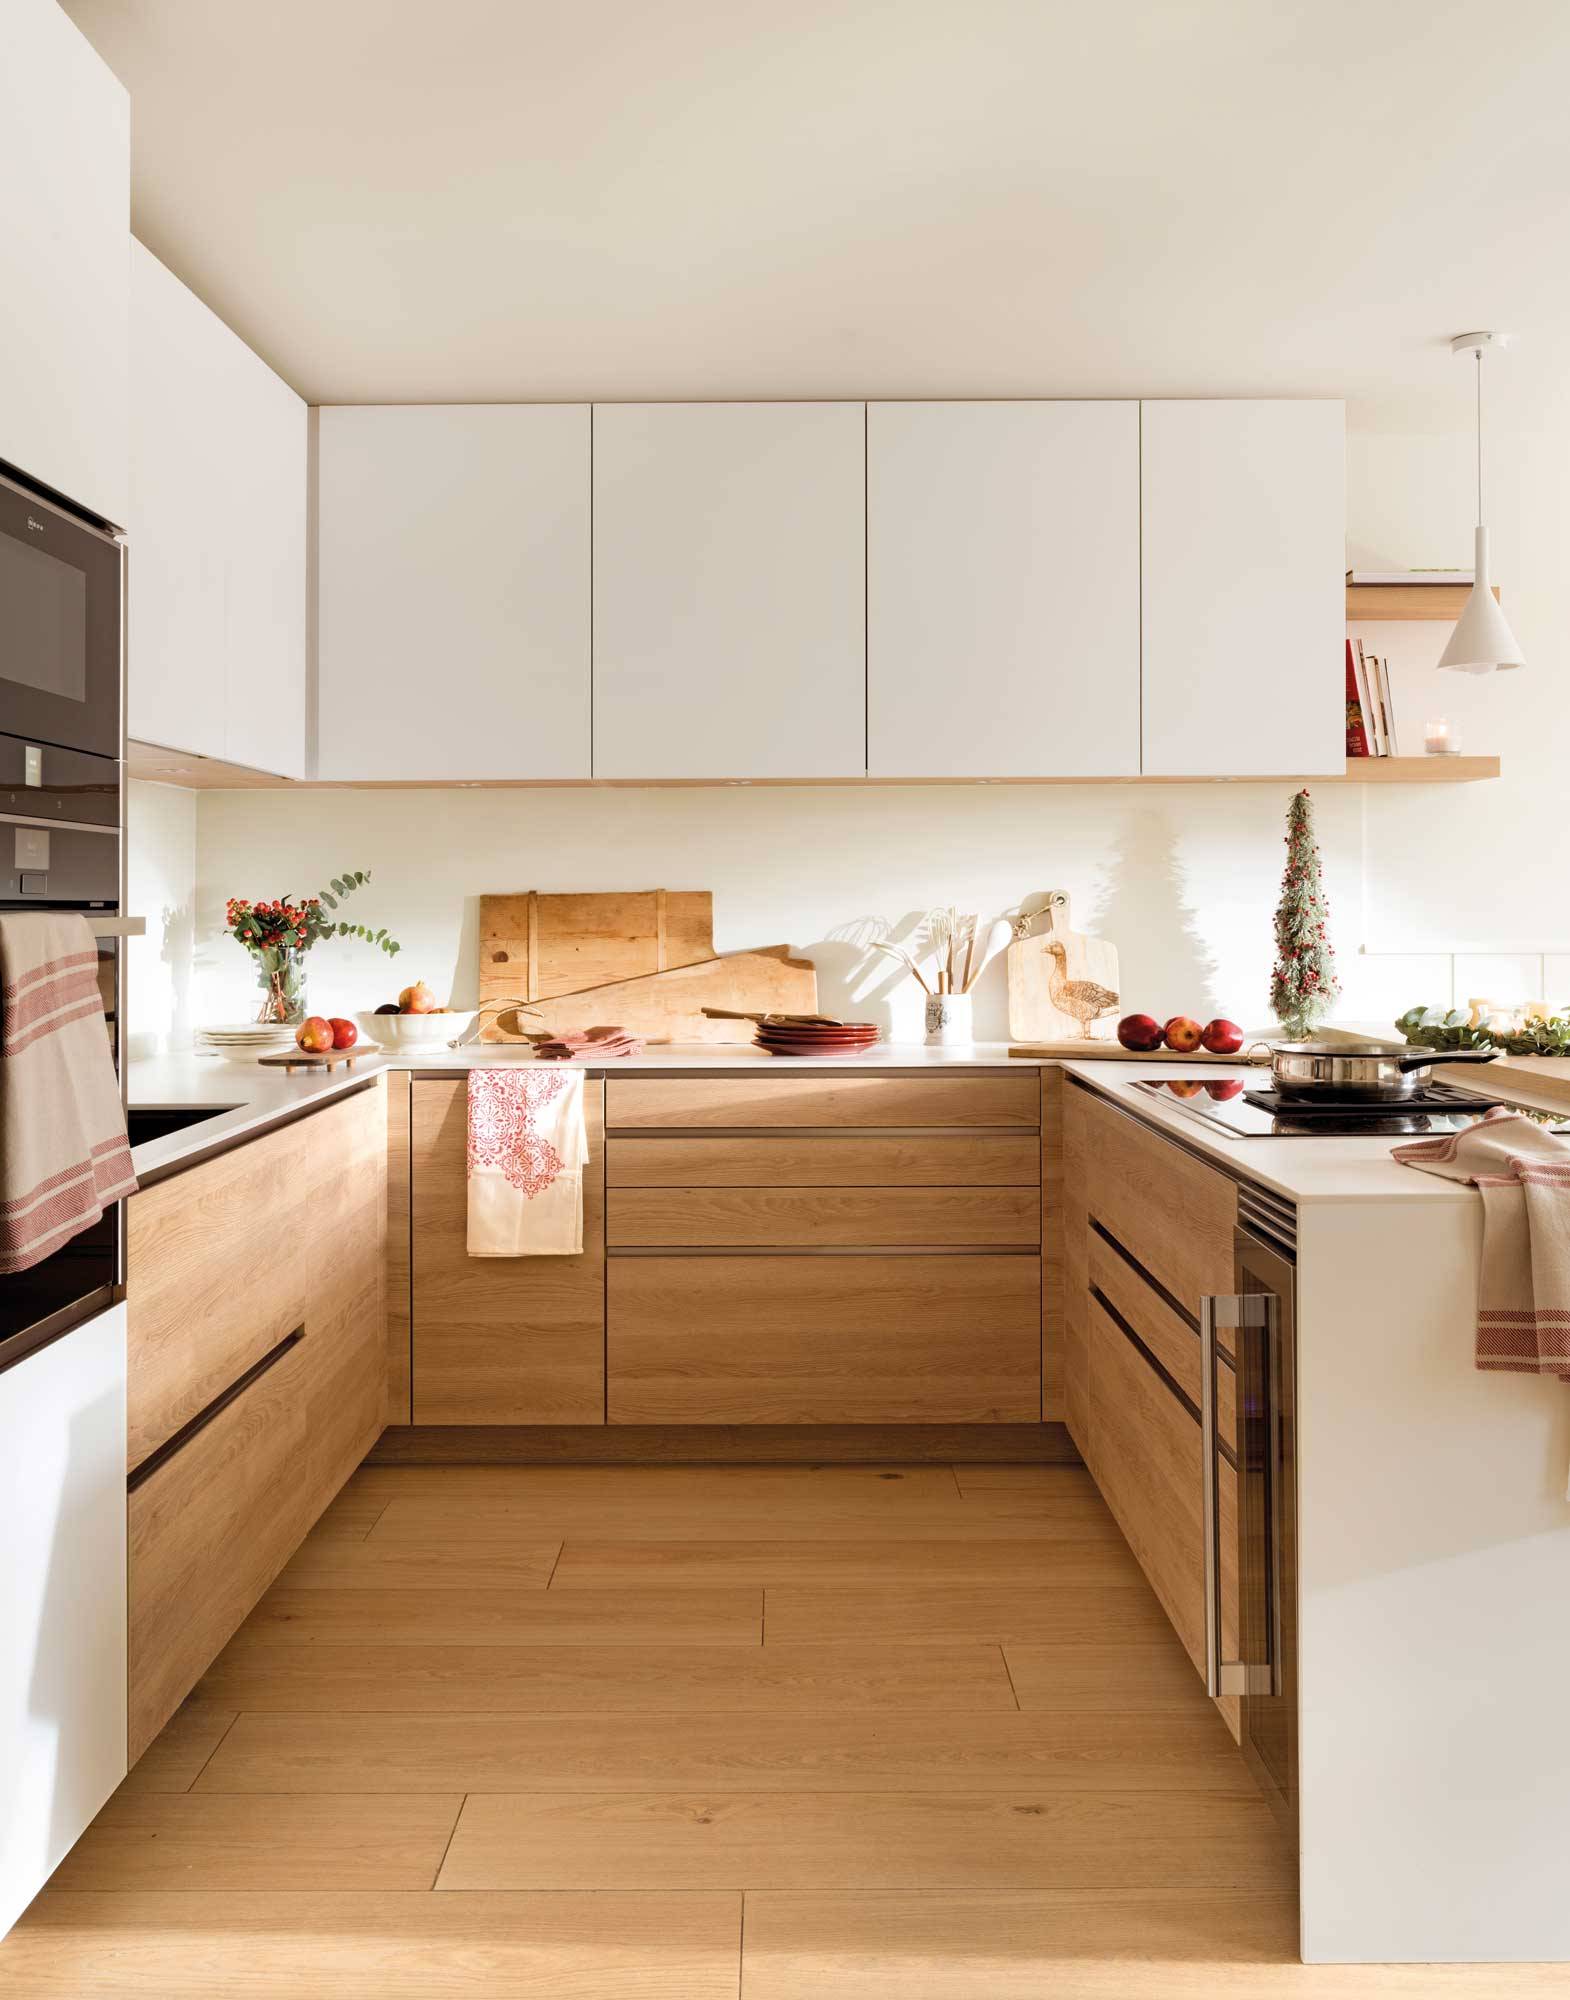 afijo patio manipular 40 cocinas en blanco y madera: las favoritas de El Mueble